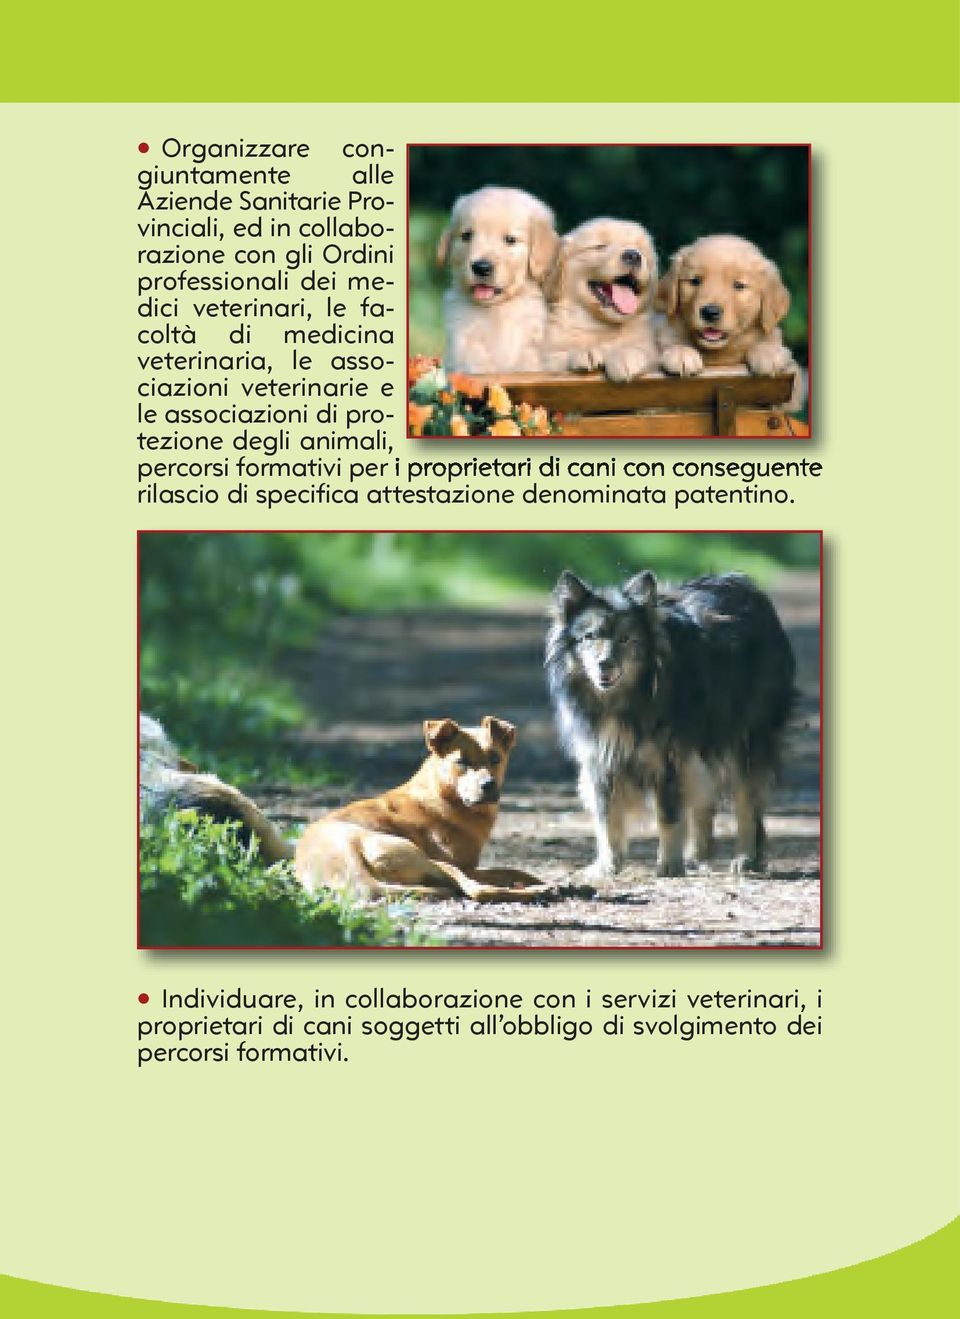 percorsi formativi per i proprietari di cani con conseguente rilascio di specifica attestazione denominata patentino.